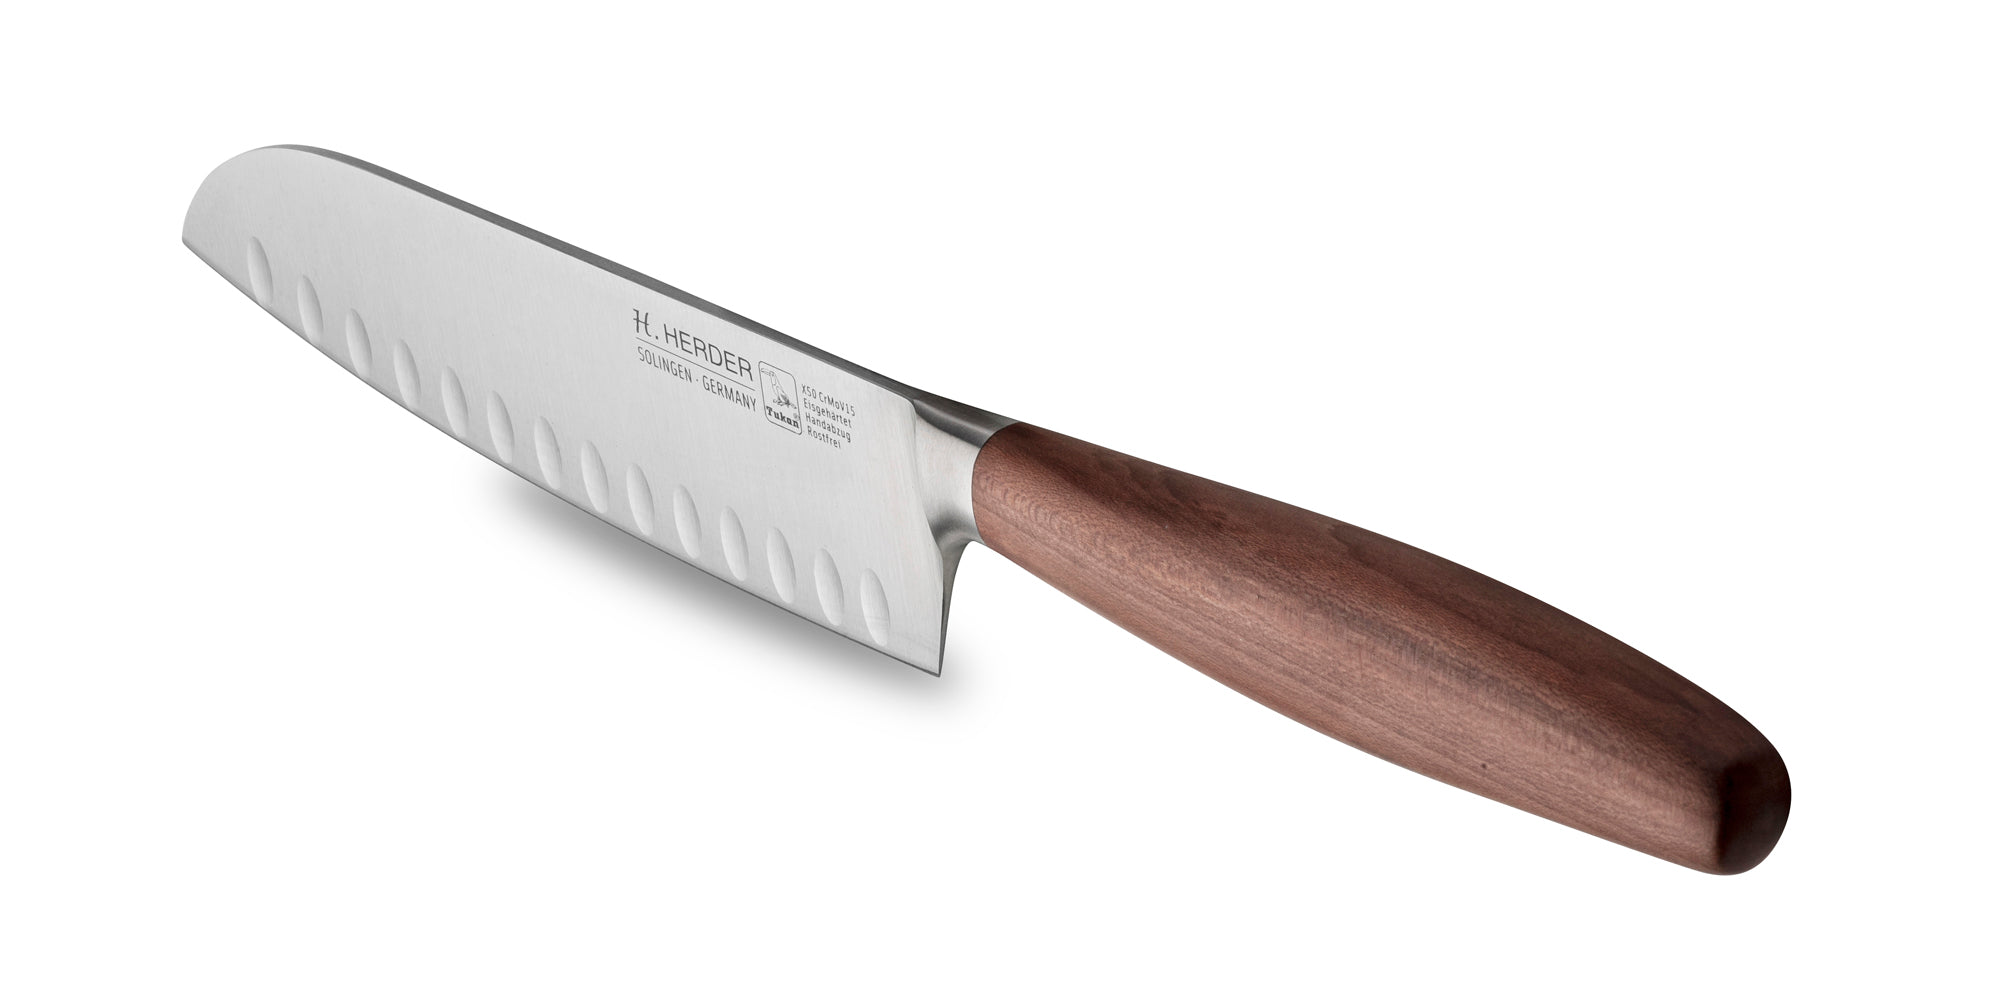 Couteau Santoku Eterno, bois de prunier, longueur de lame 16 cm, forgé, tranchant alvéolé